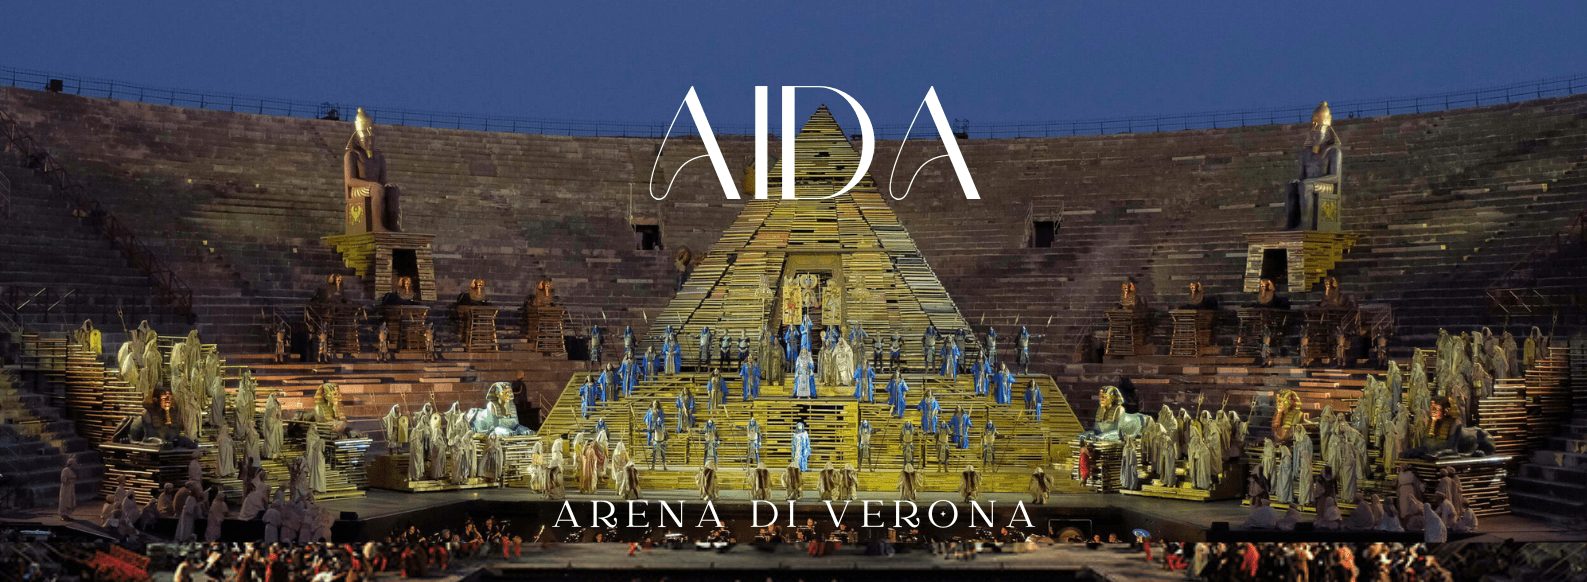 aida-opera-tickets-arena-di-verona-biglietti-netrebko